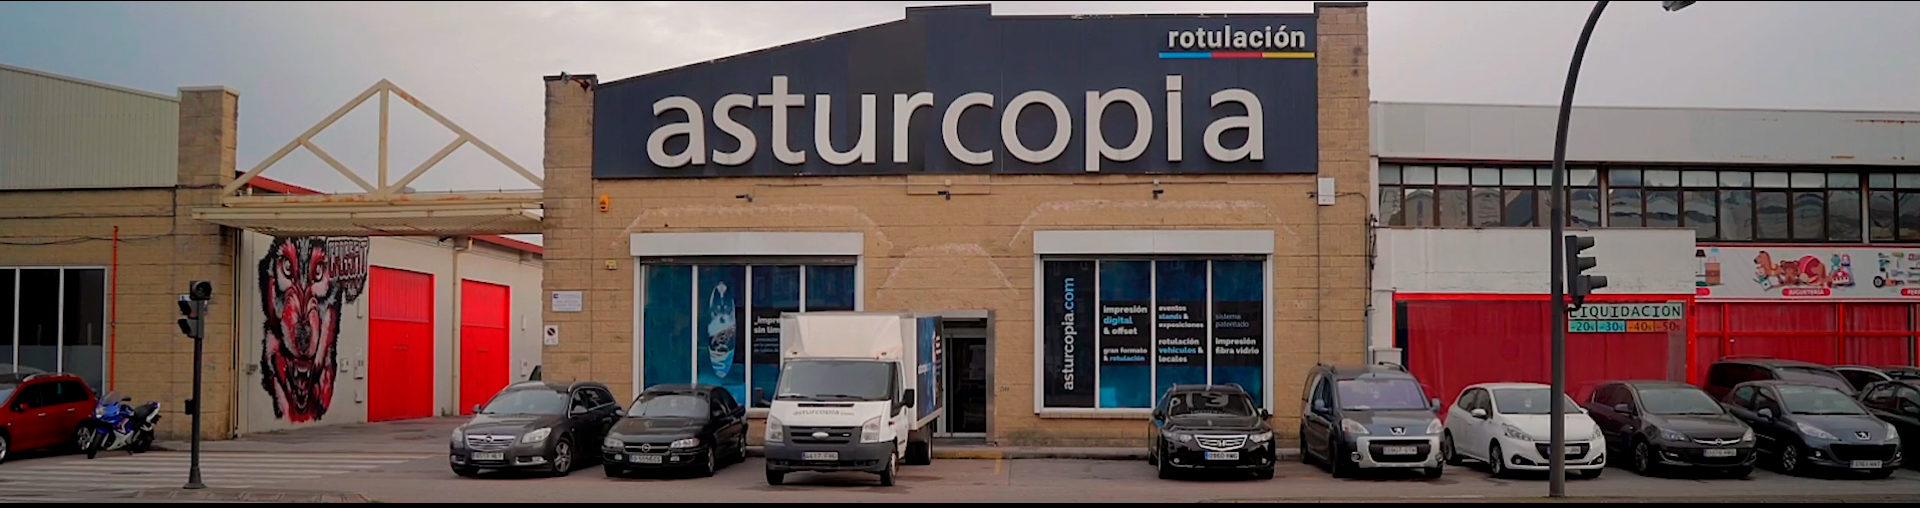 Asturcopia Impresión digital en Asturias